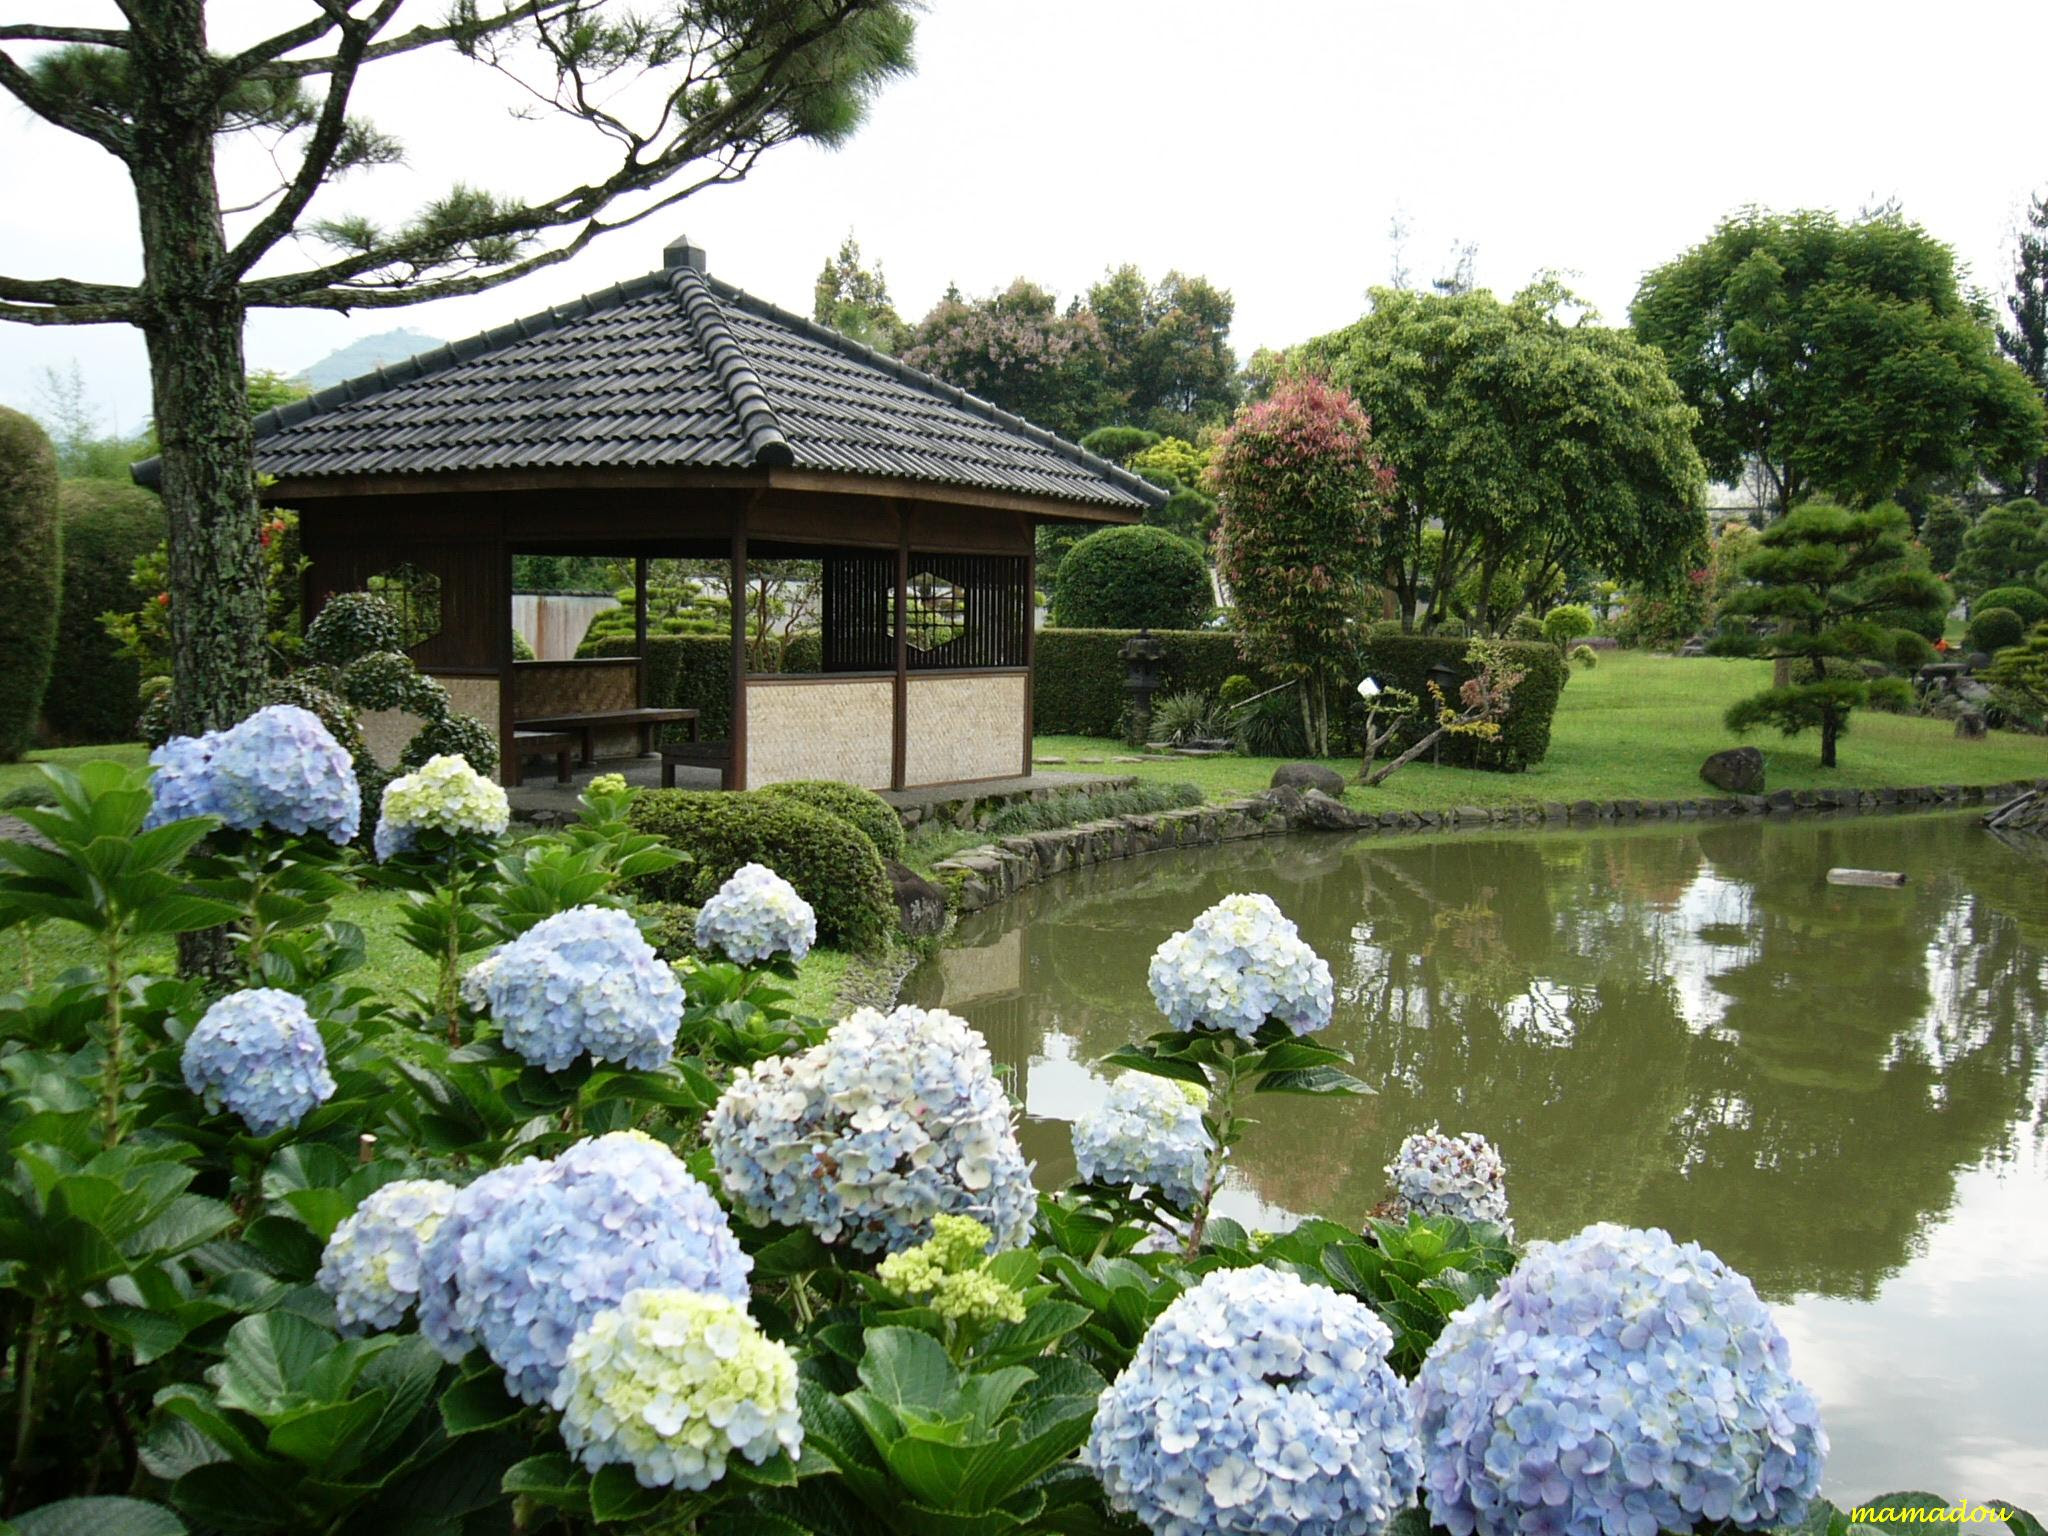  Taman  Jepang  di  AS dan Indonesia BE HAPPY 